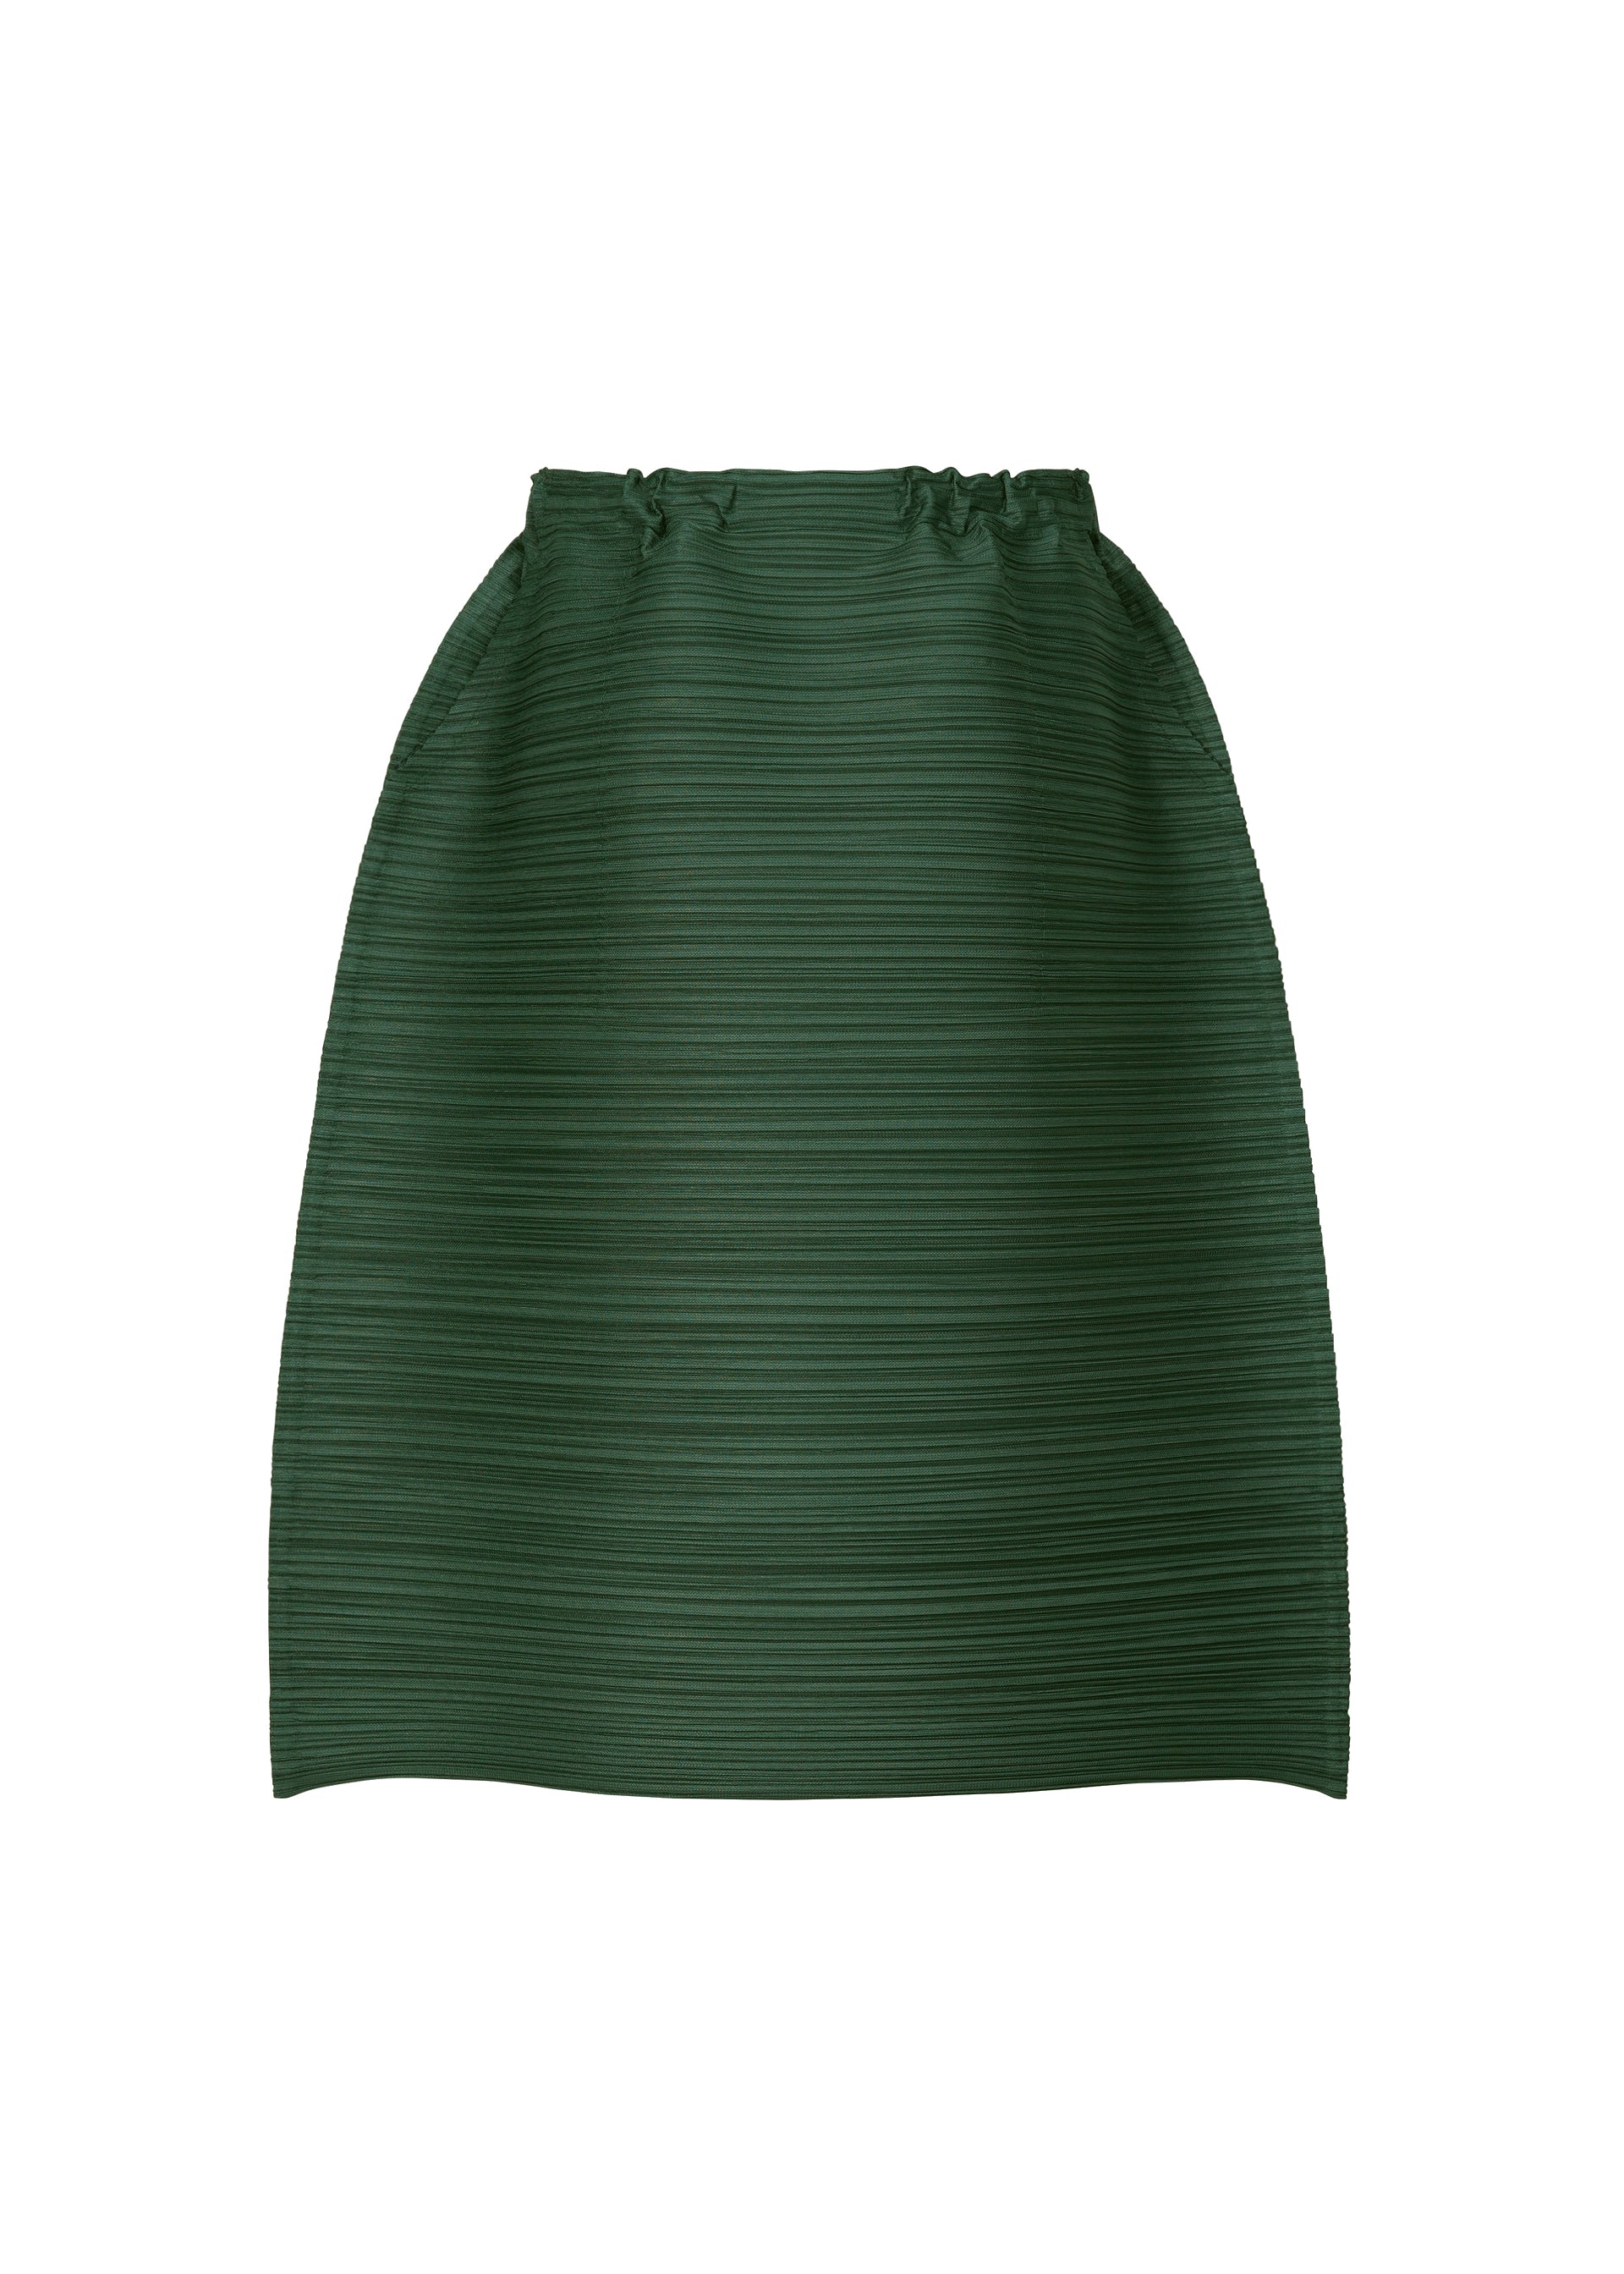 THICKER BOUNCE Skirt Dark Green | ISSEY MIYAKE ONLINE STORE UK